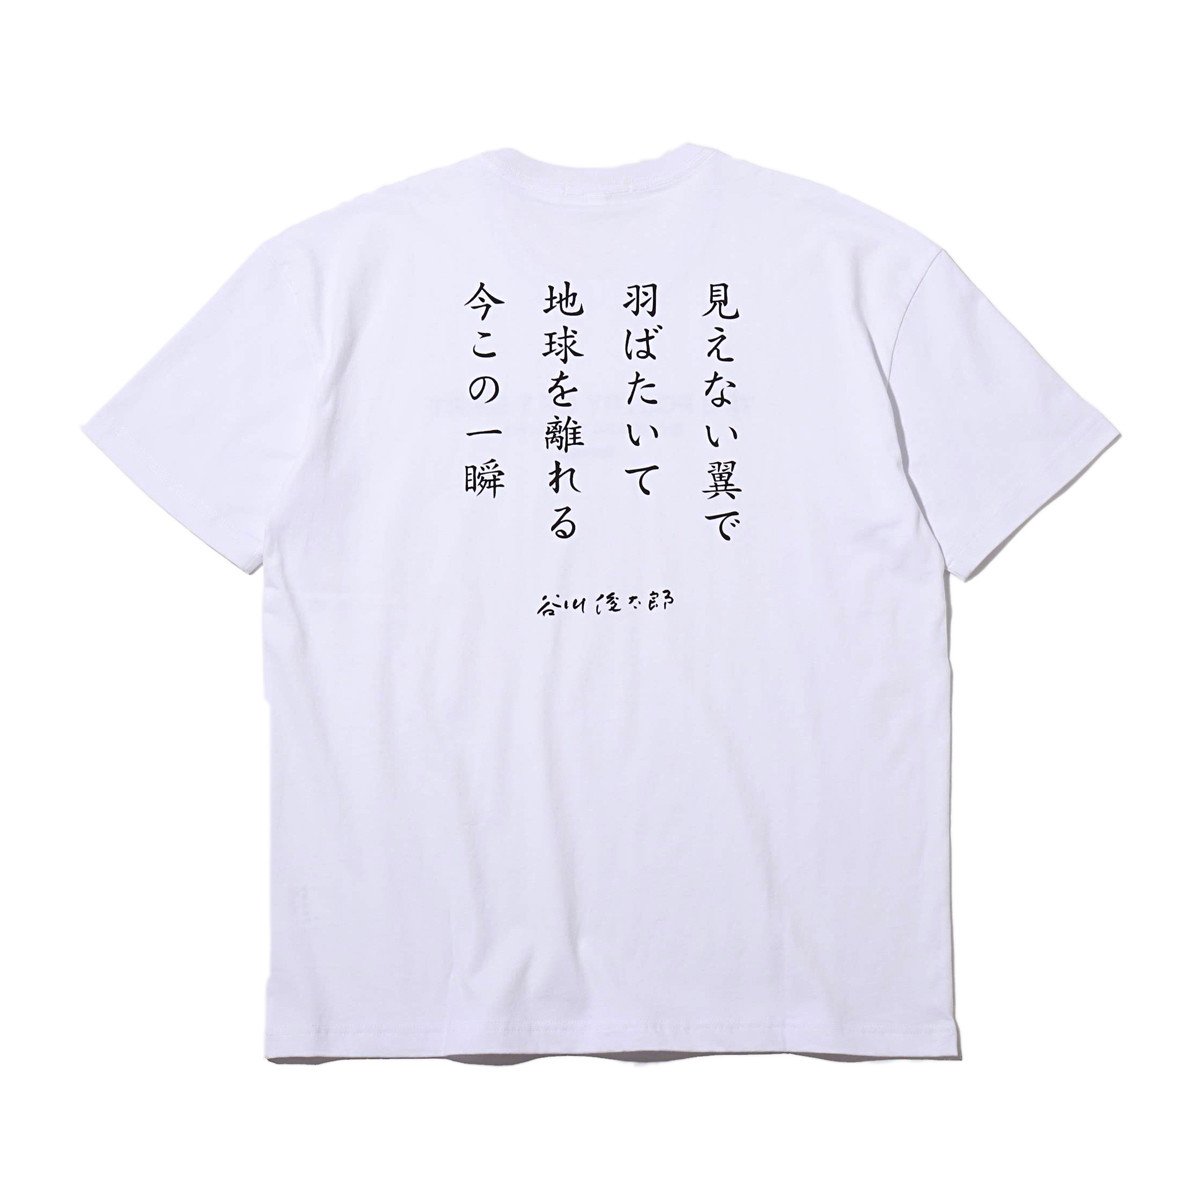 コムデギャルソン x 谷川俊太郎 プリントシャツ